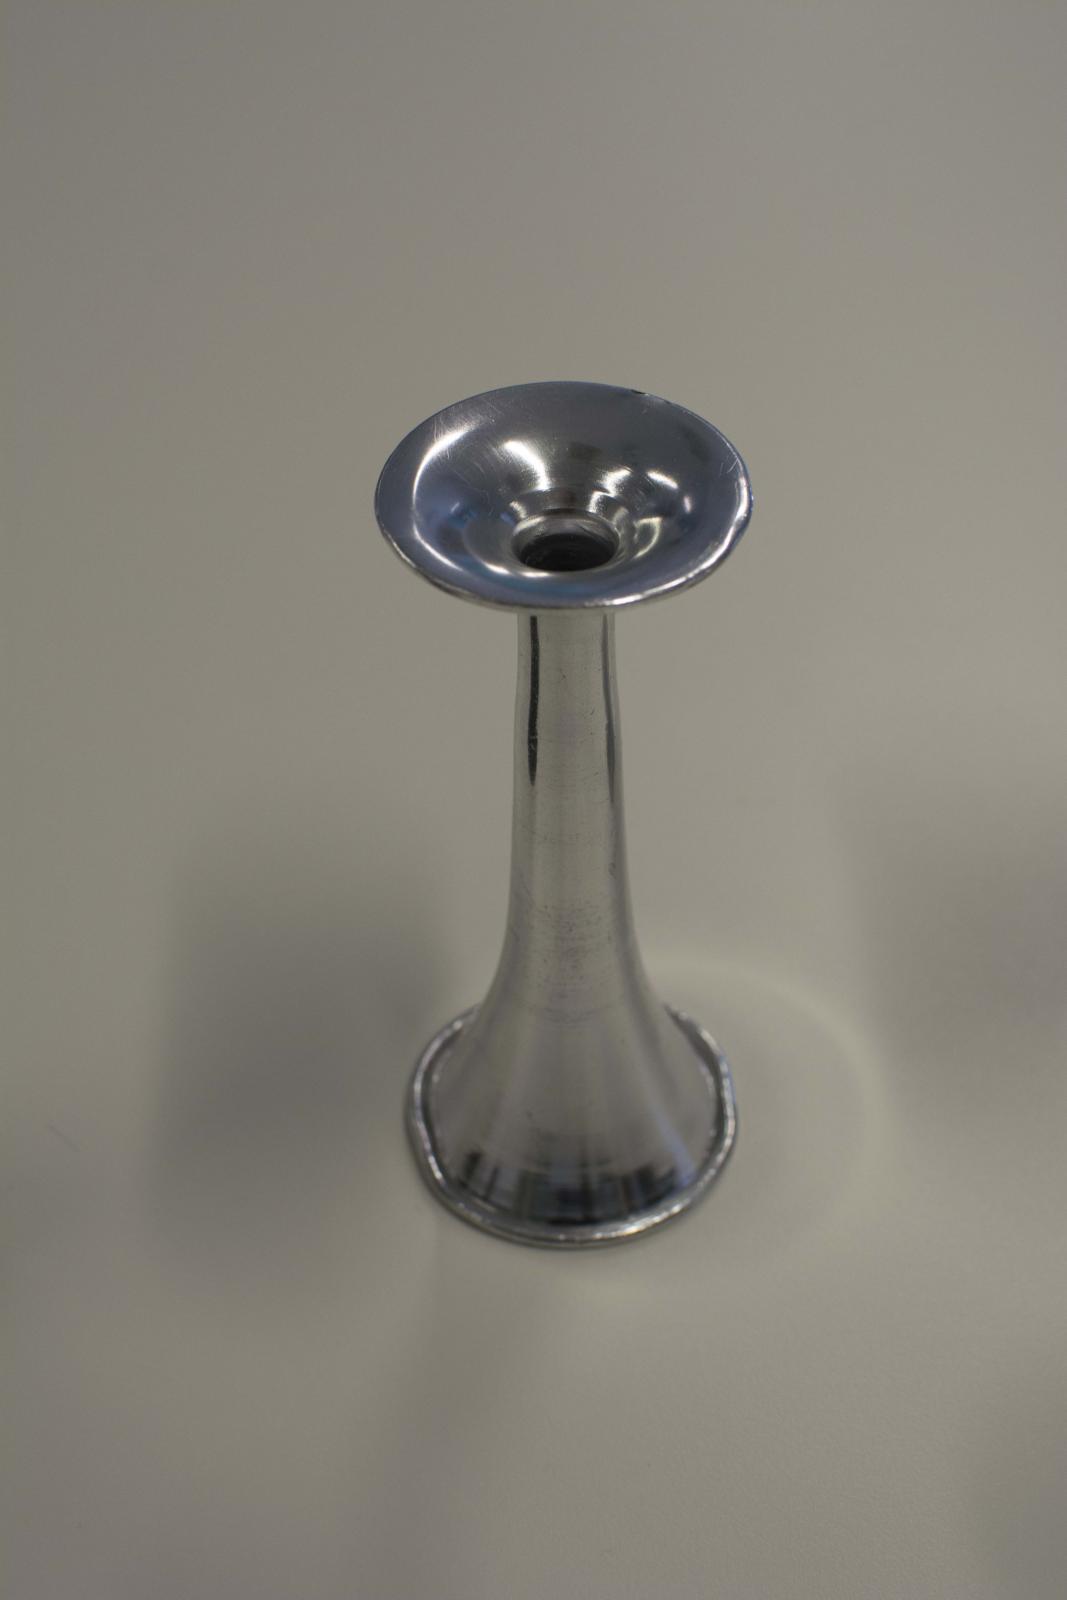 Instrumento metálico con forma de campana a cuyo extremo estrecho se adosa un disco con una oquedad interior